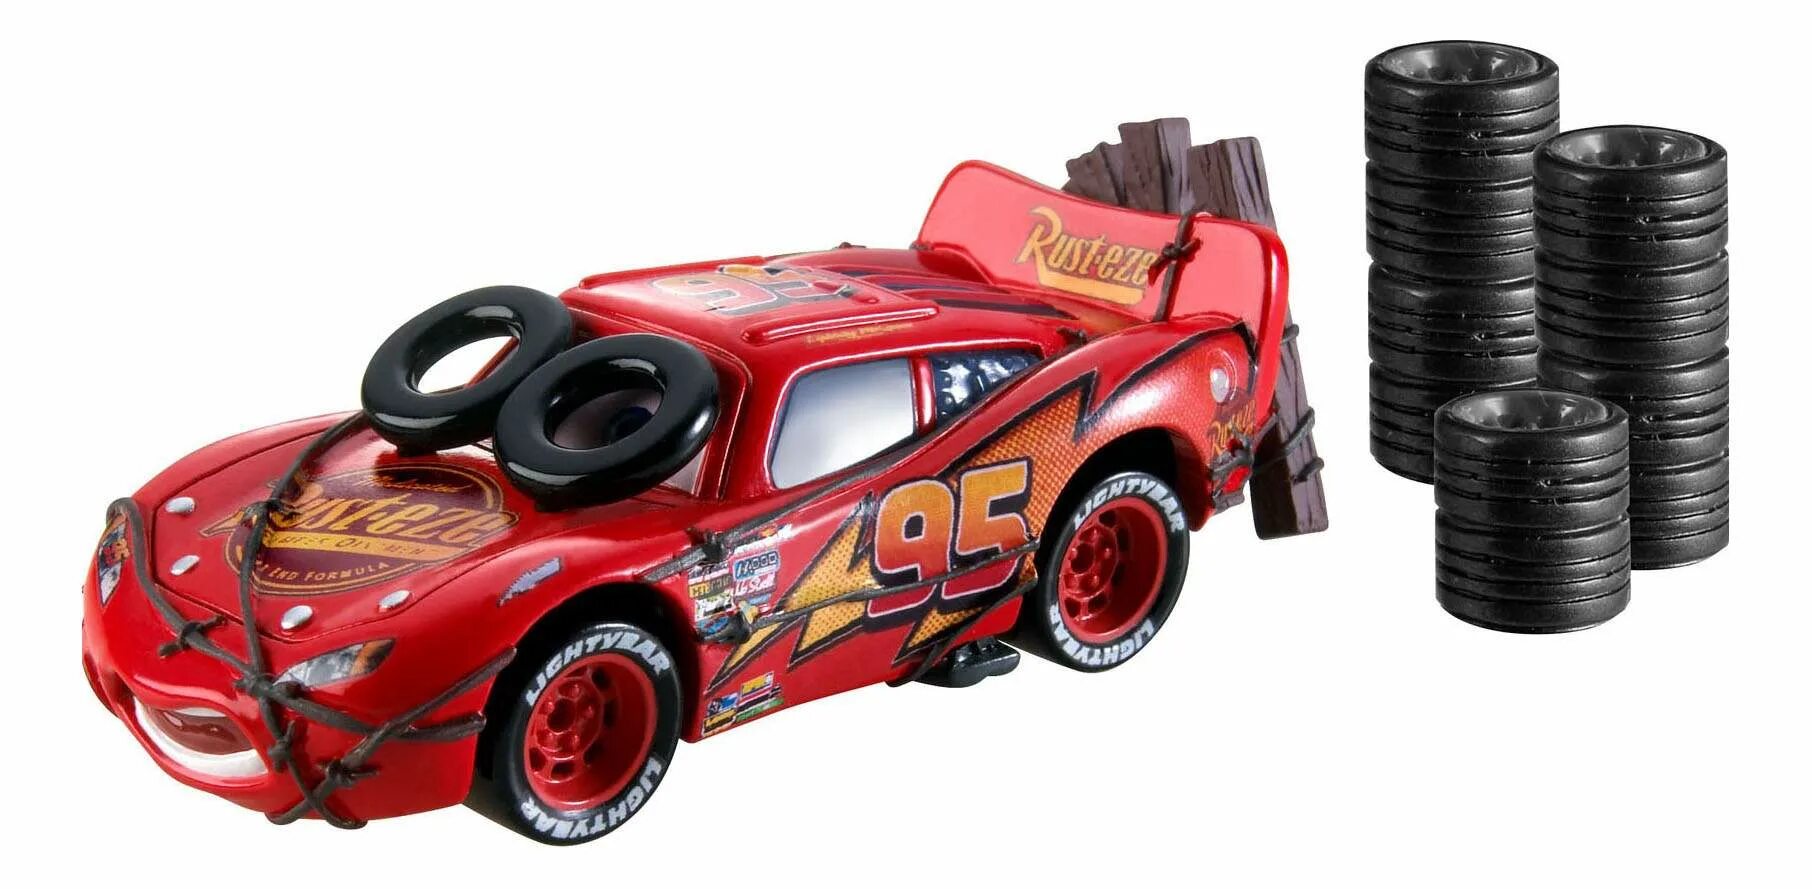 Молния Мак куин, Daredevil Garage Disney cars, Mattel. Гоночная машина Mattel cars Carbon Racers Lightning MCQUEEN (dhn00/dhn01) 1:43 7.5 см. Гоночная машина Mattel Тачки модель коллекционная молния Маккуин (dhd60/dhd61) 7 см. Гоночная машина Mattel Тачки 3 молния Маккуин.